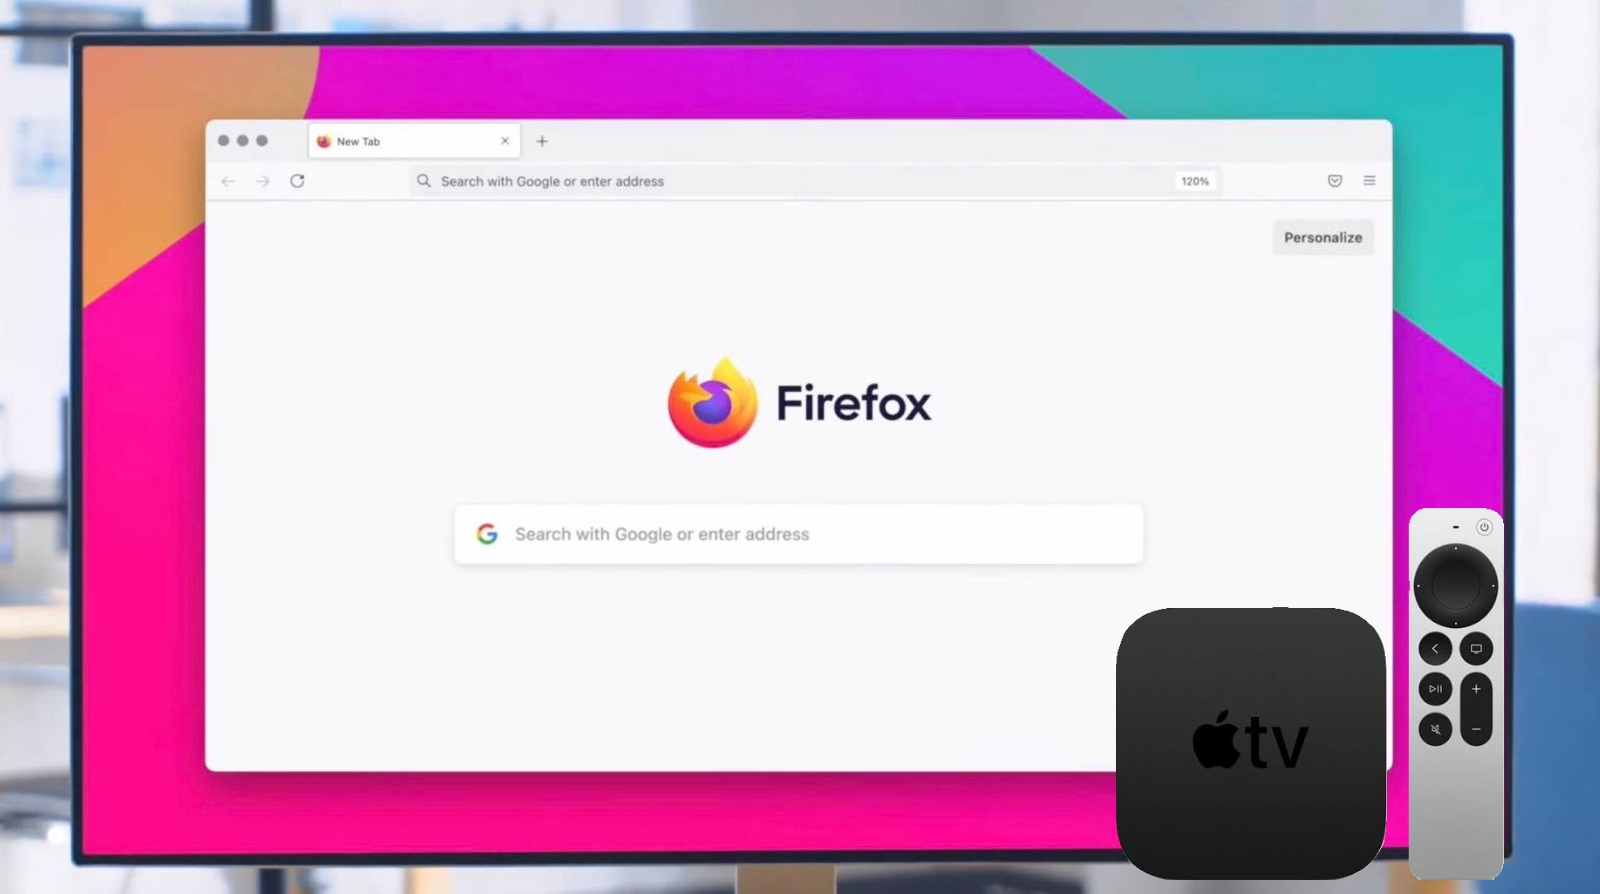 Firefox on Apple TV